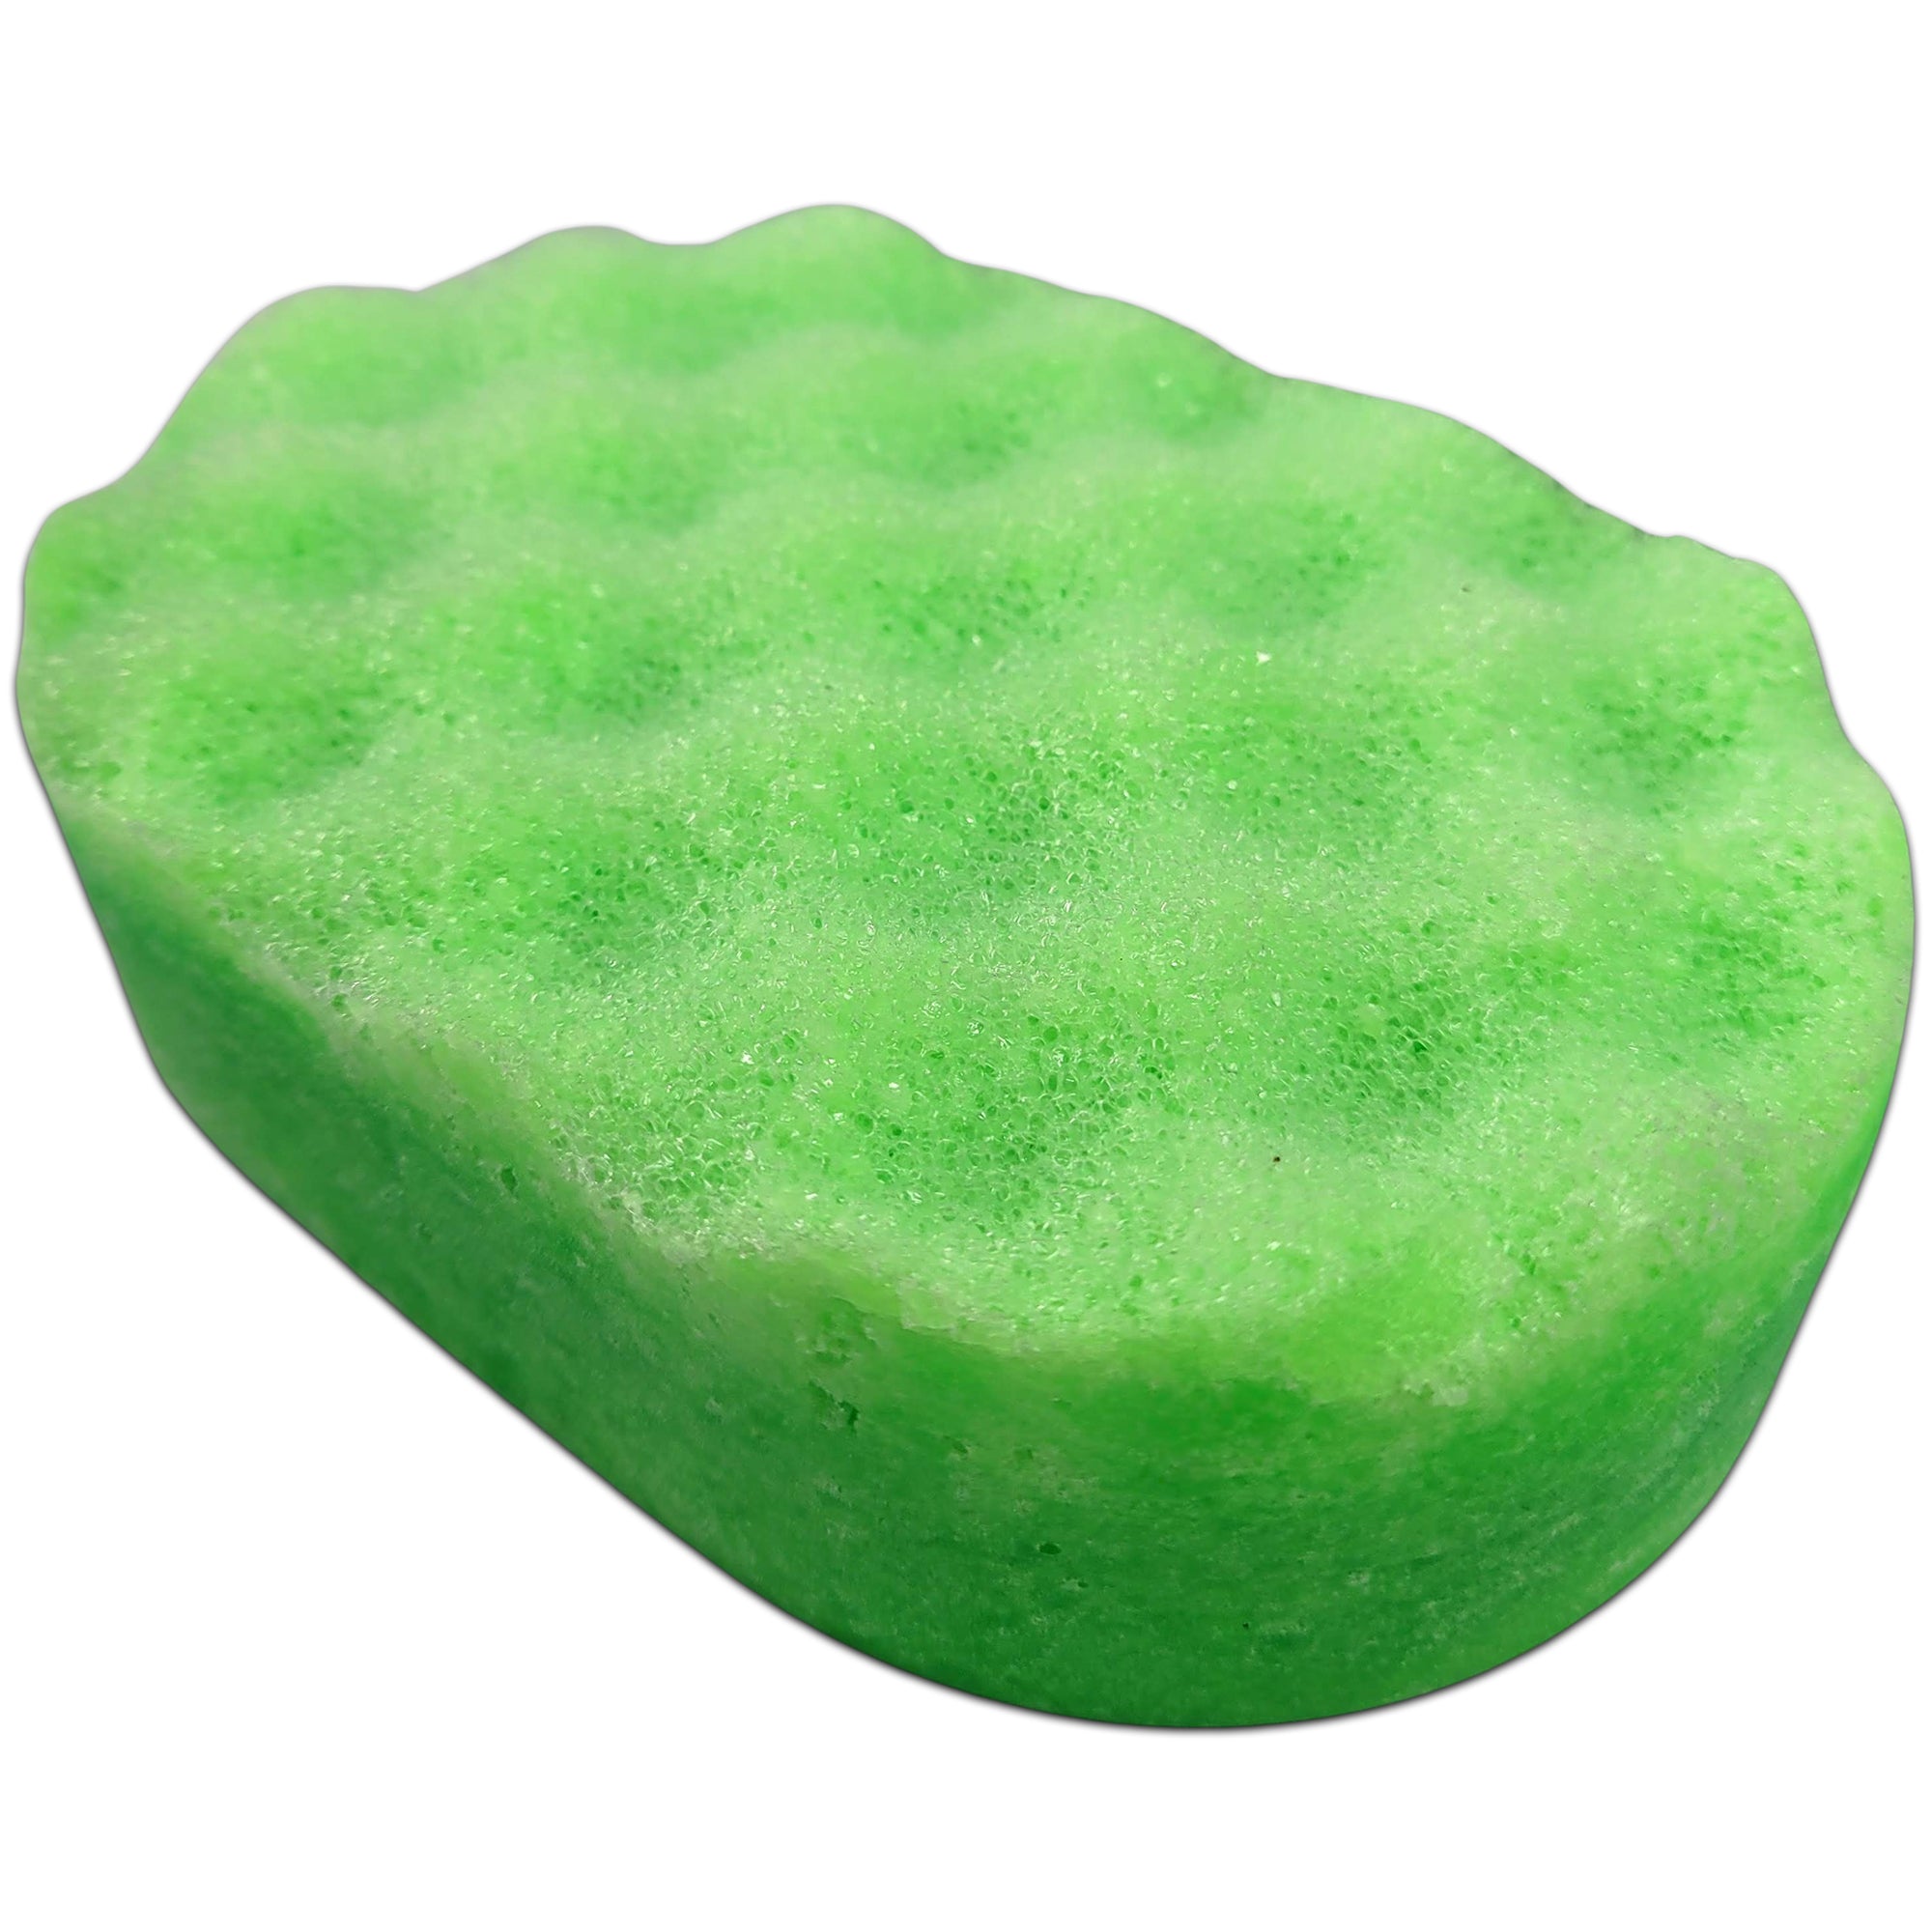 Ave a Bath Soap Sponges